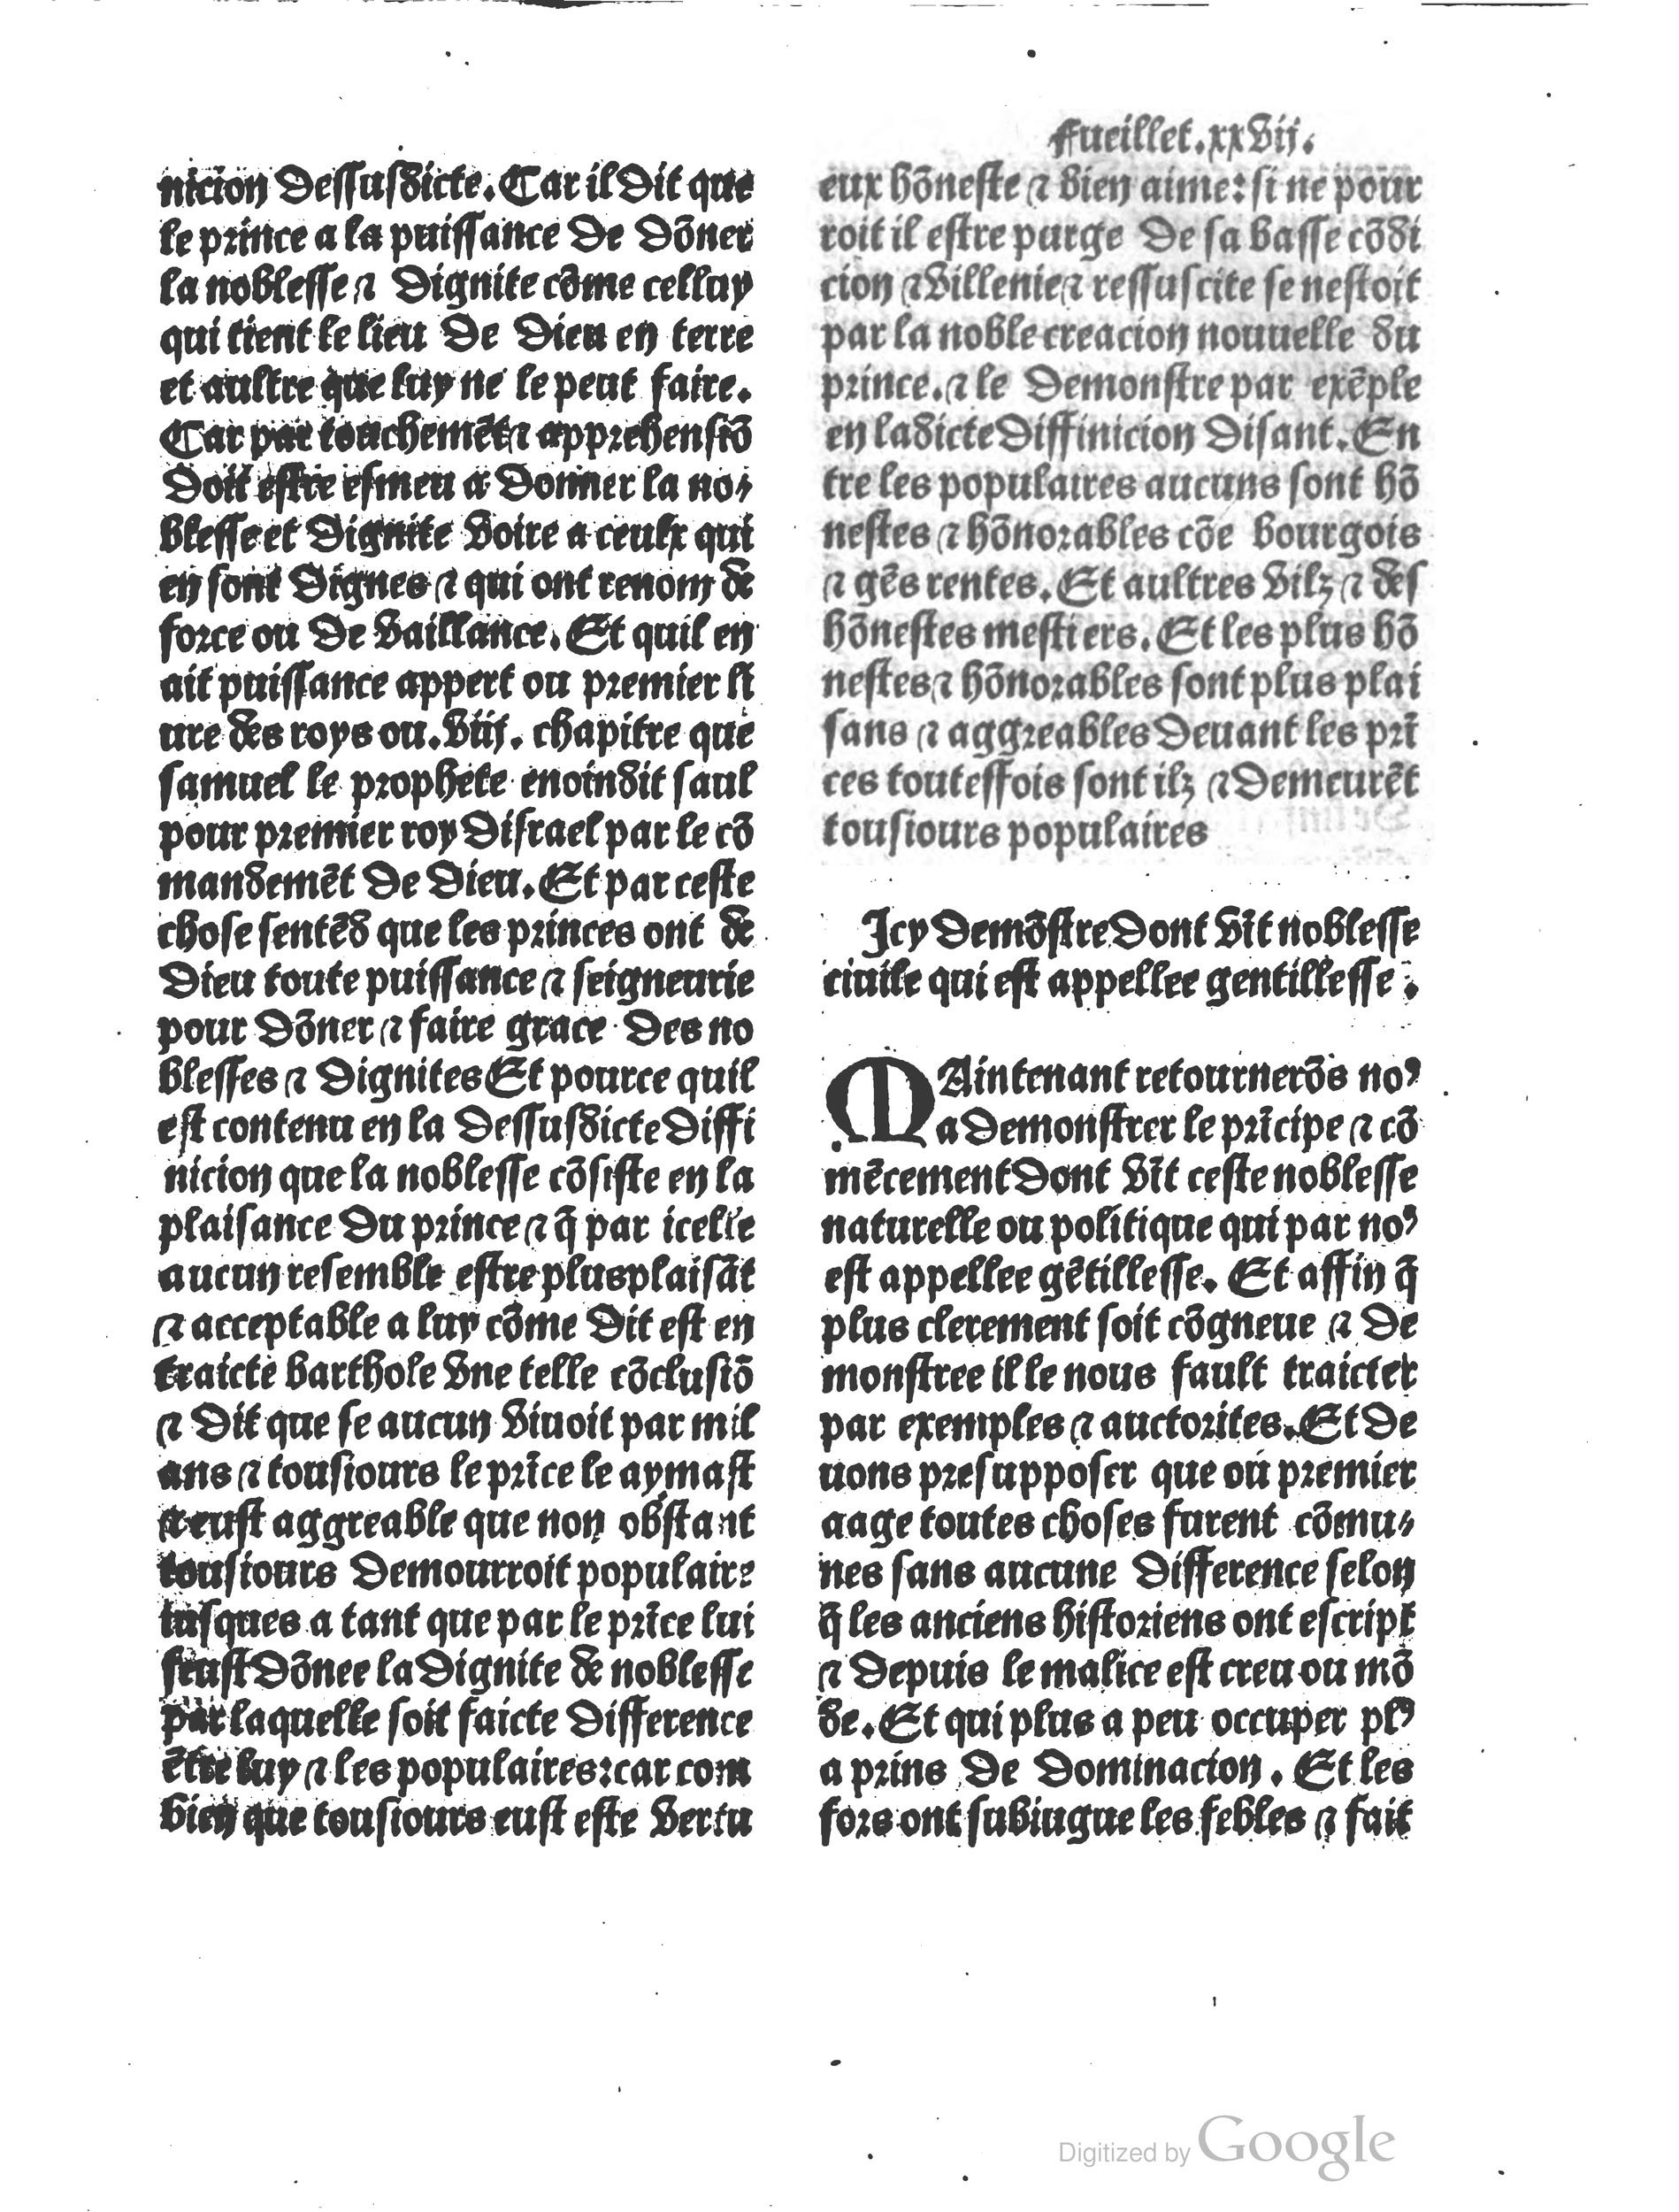 1497 Trésor de noblesse Vérard_BM Lyon_Page_067.jpg